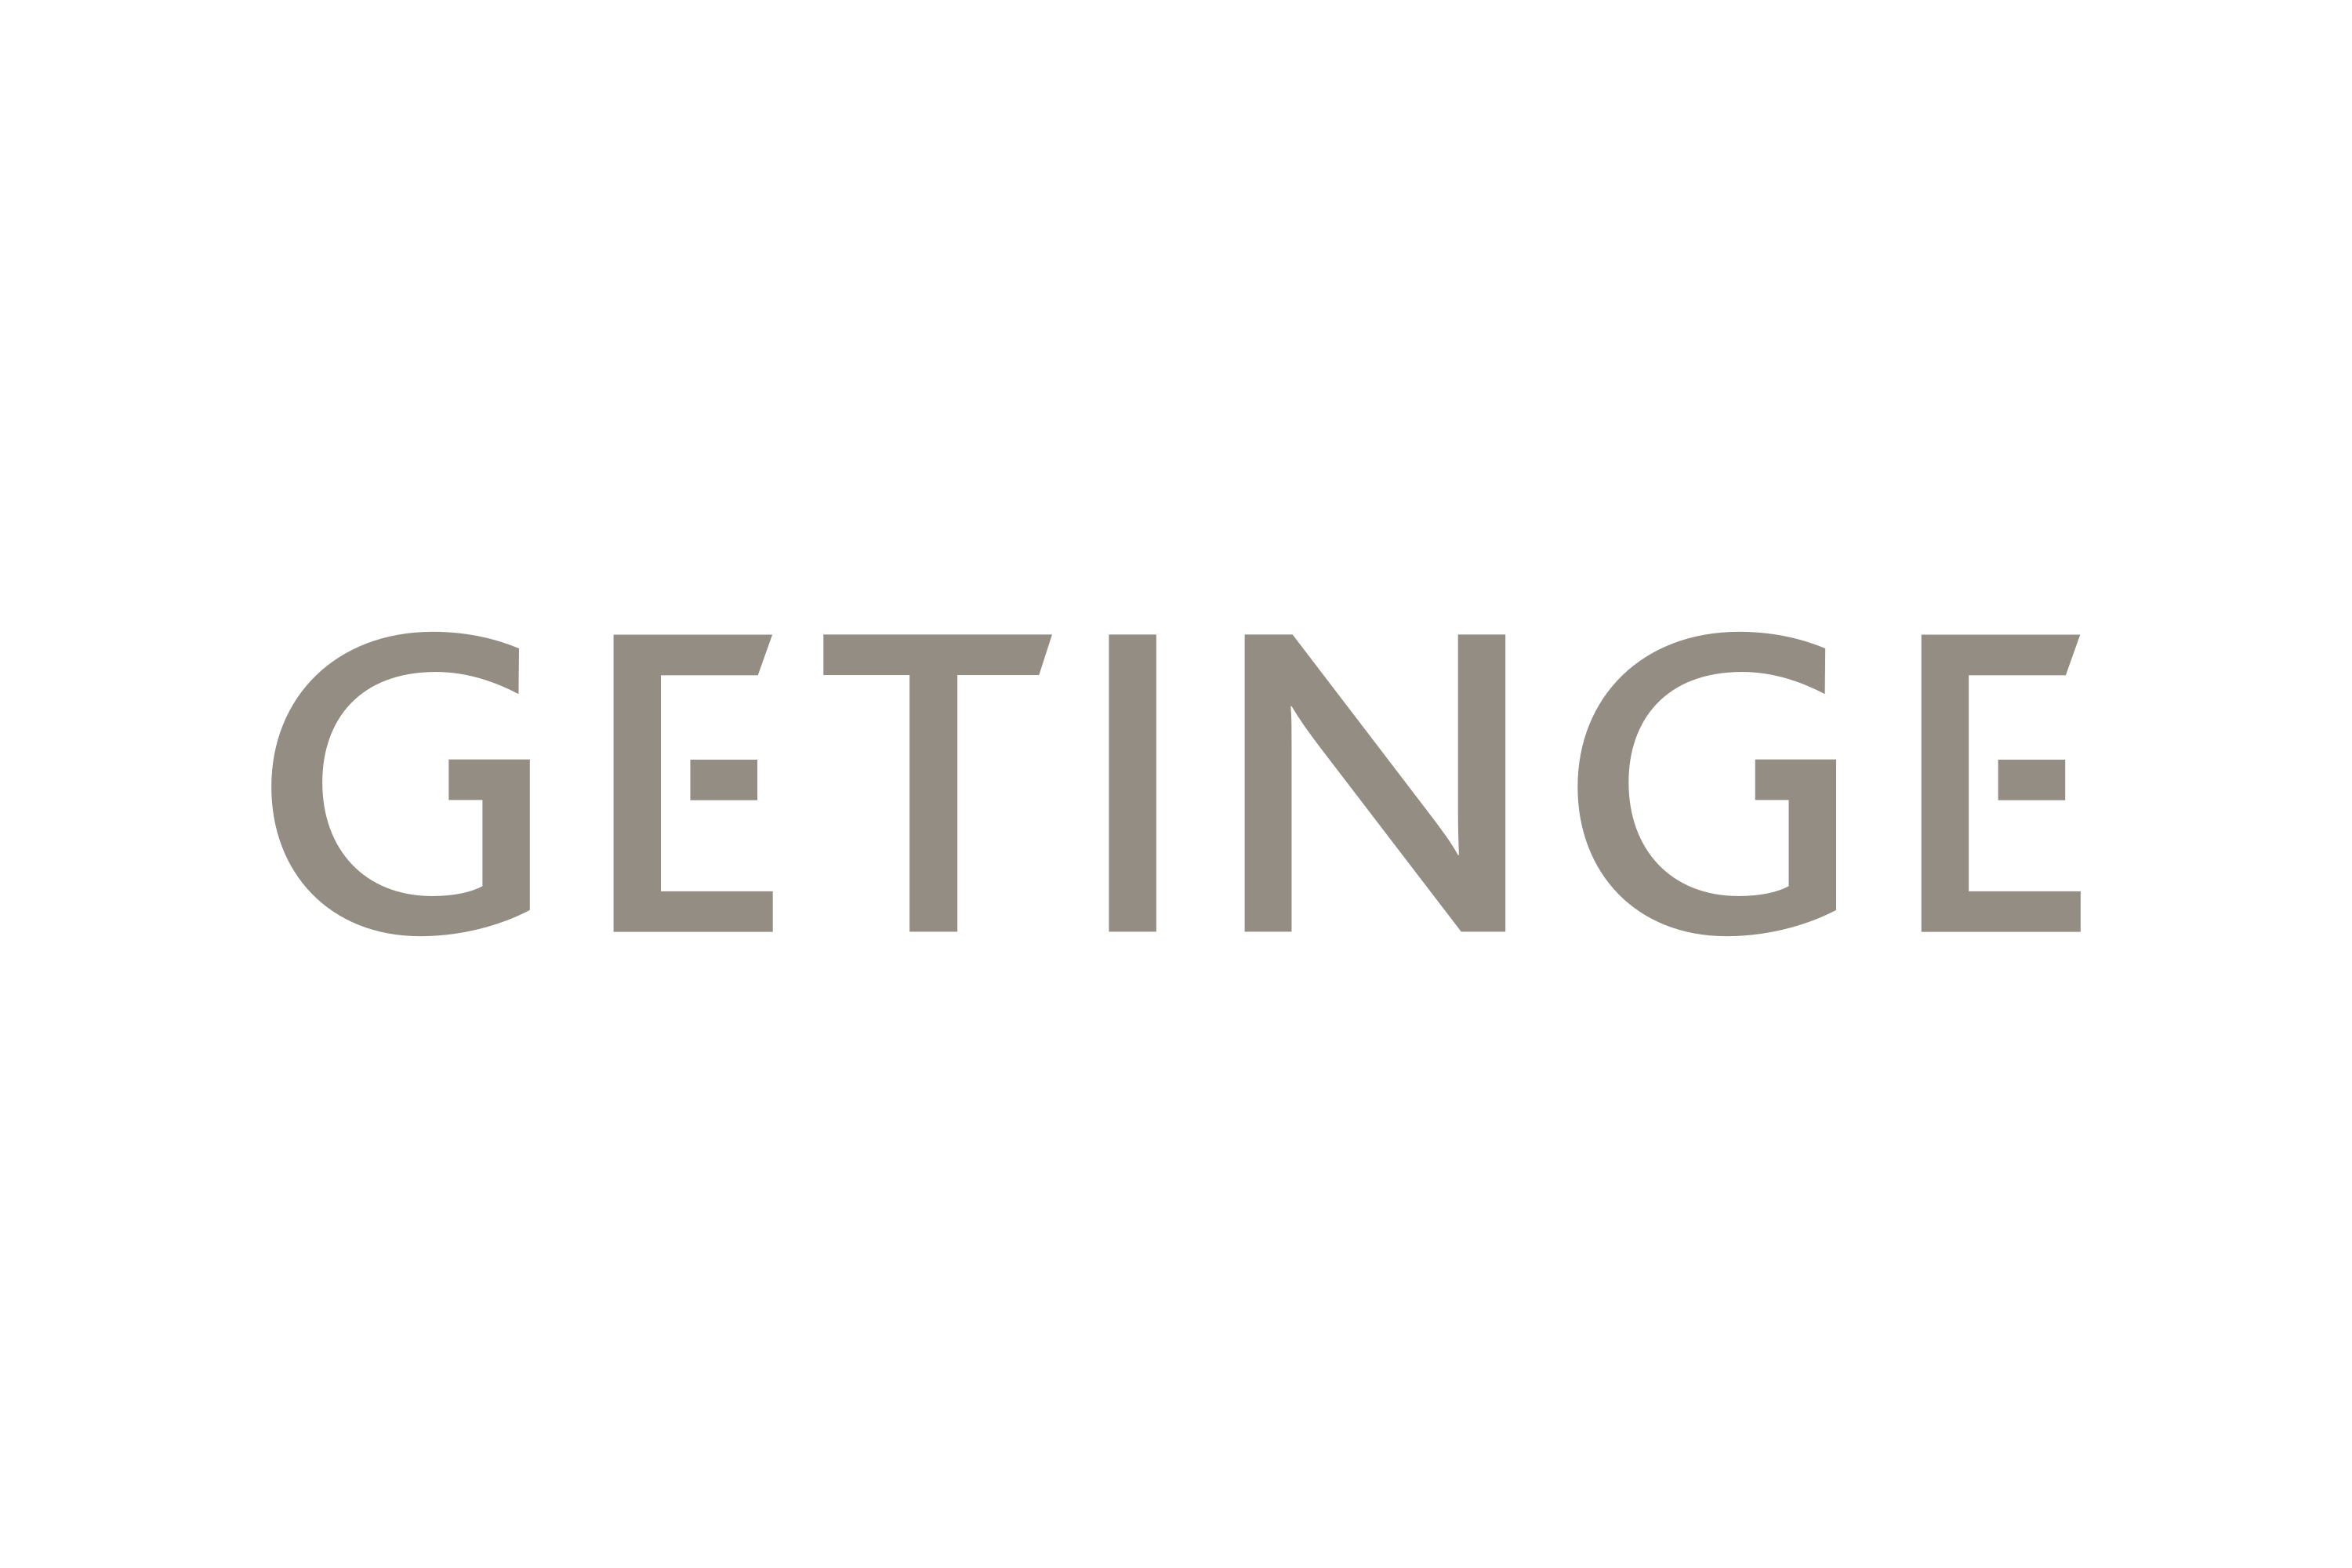 Getinge AB Logo